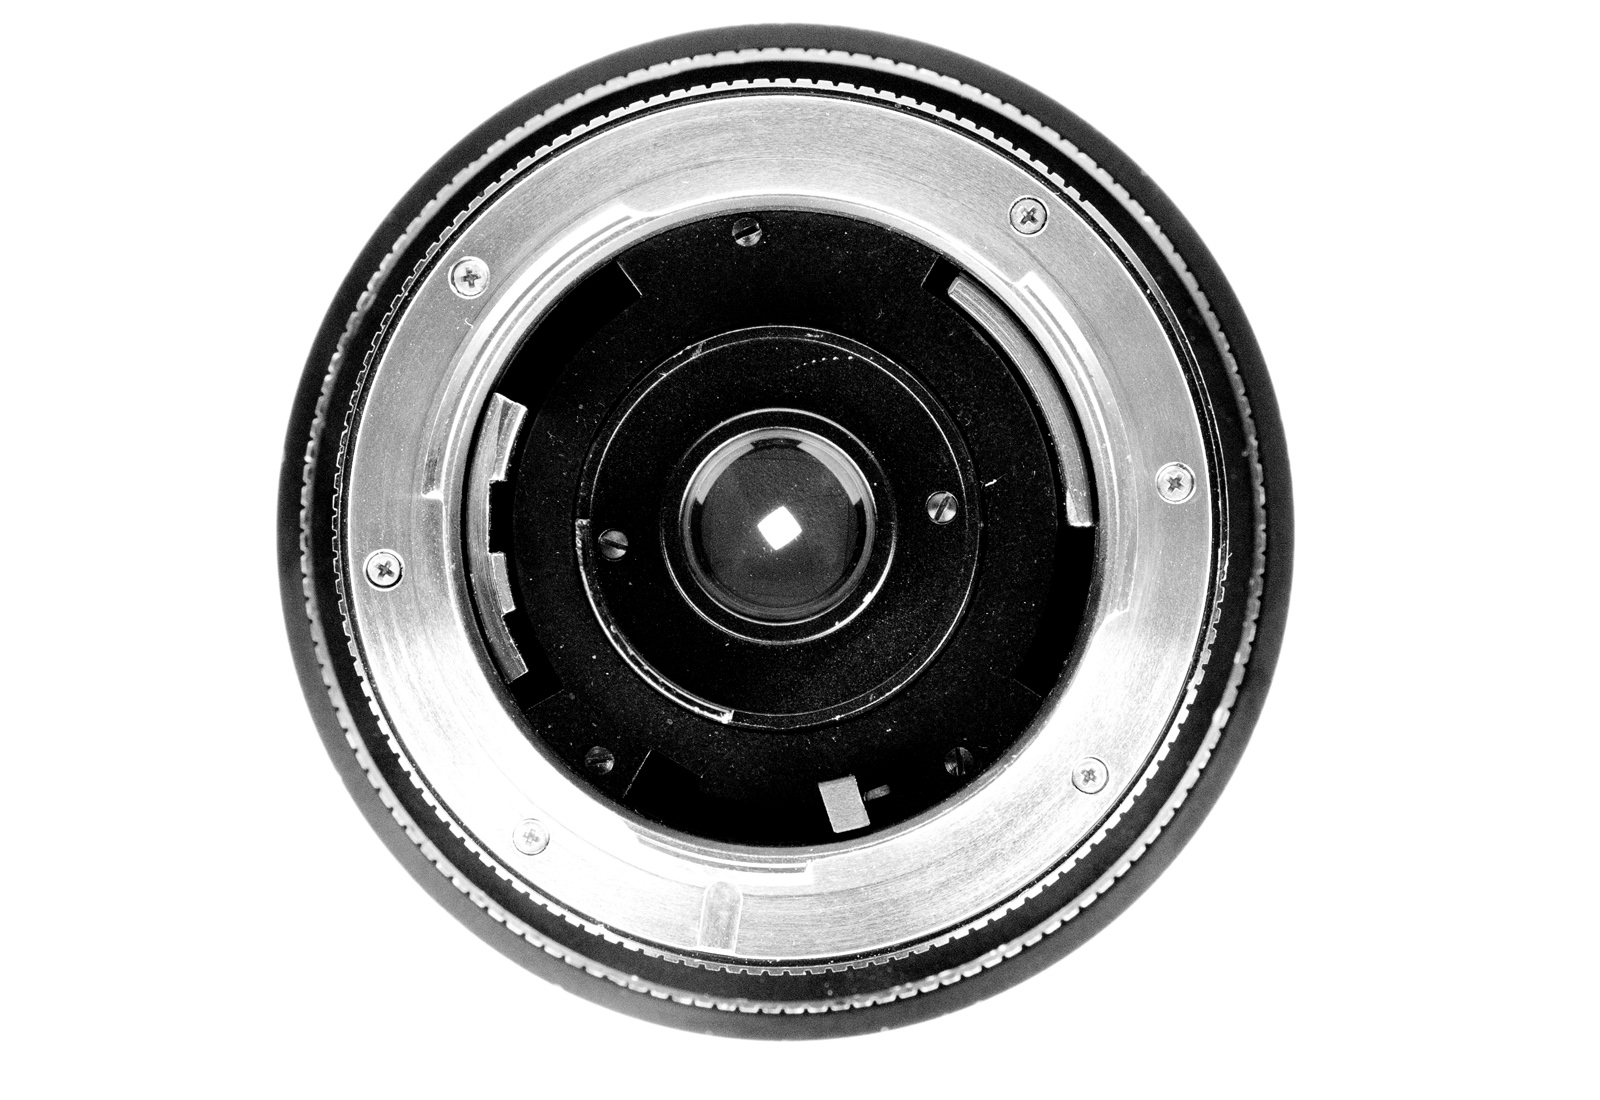 Leica Super-Angulon-R 1:4/21mm, black 11813 